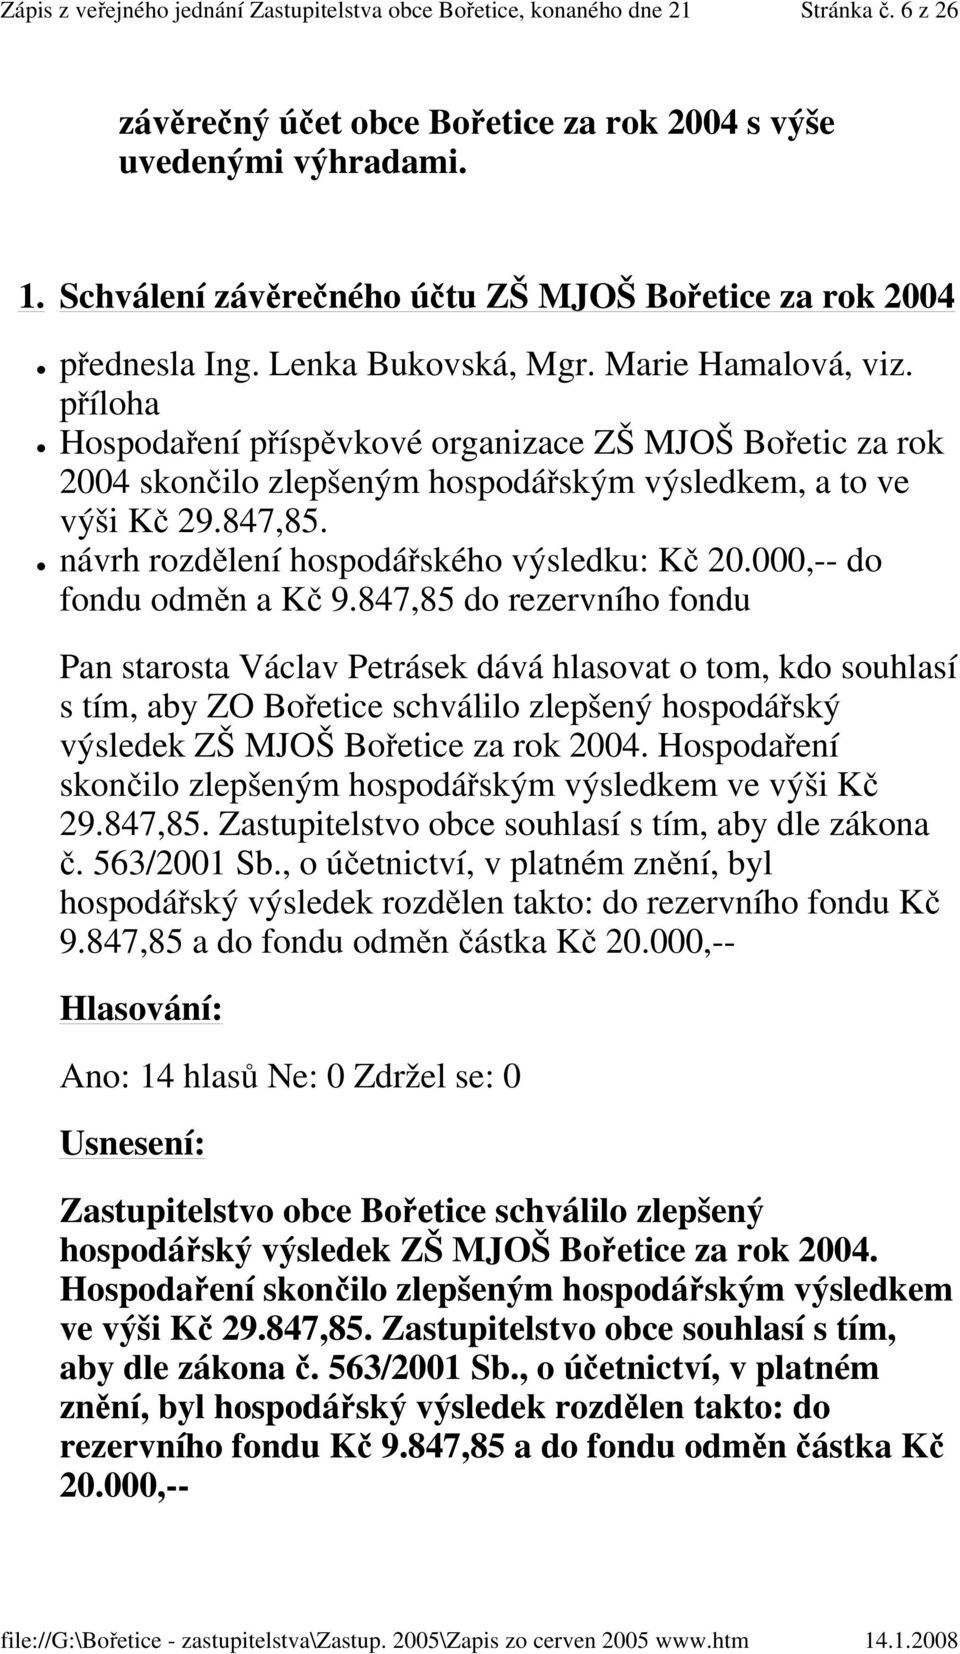 návrh rozdělení hospodářského výsledku: Kč 20.000,-- do fondu odměn a Kč 9.847,85 do rezervního fondu s tím, aby ZO Bořetice schválilo zlepšený hospodářský výsledek ZŠ MJOŠ Bořetice za rok 2004.